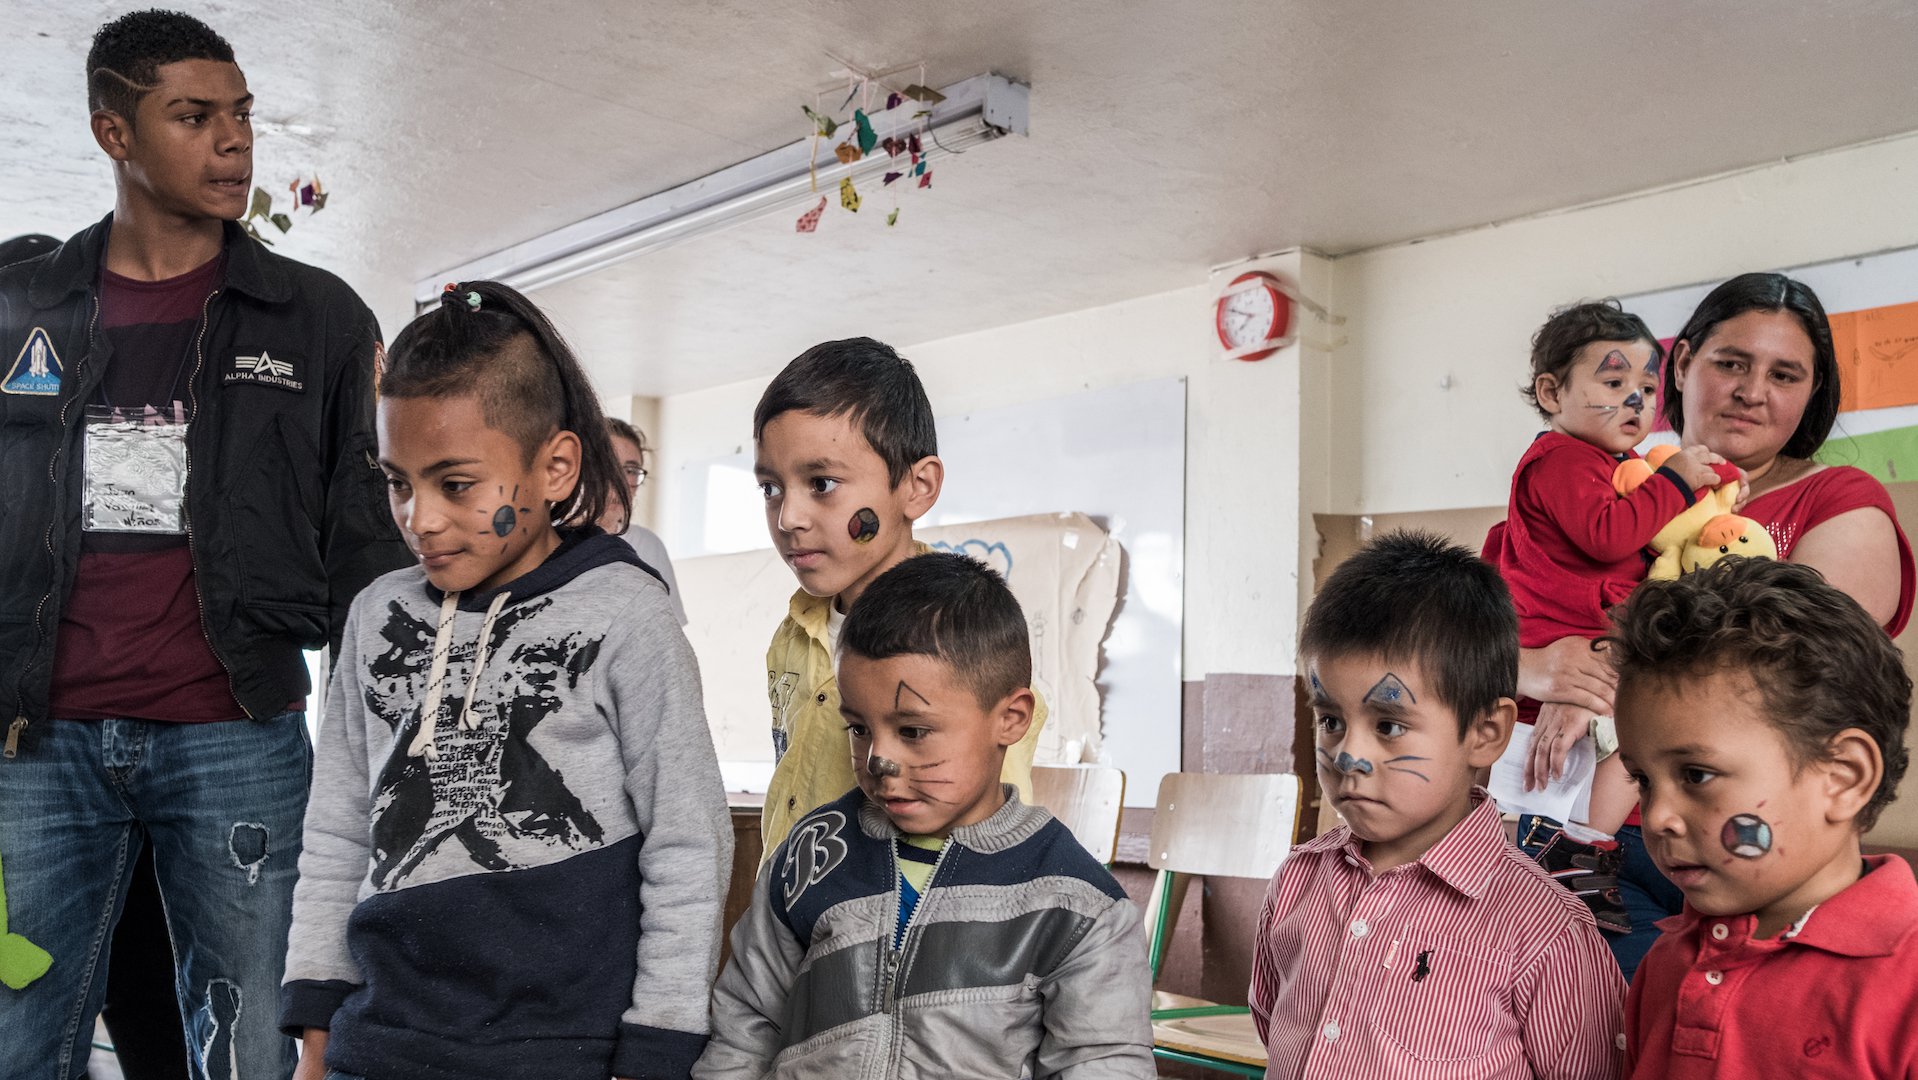 Gevluchte kinderen uit Venezuela in Colombia - schminken spelen War Child